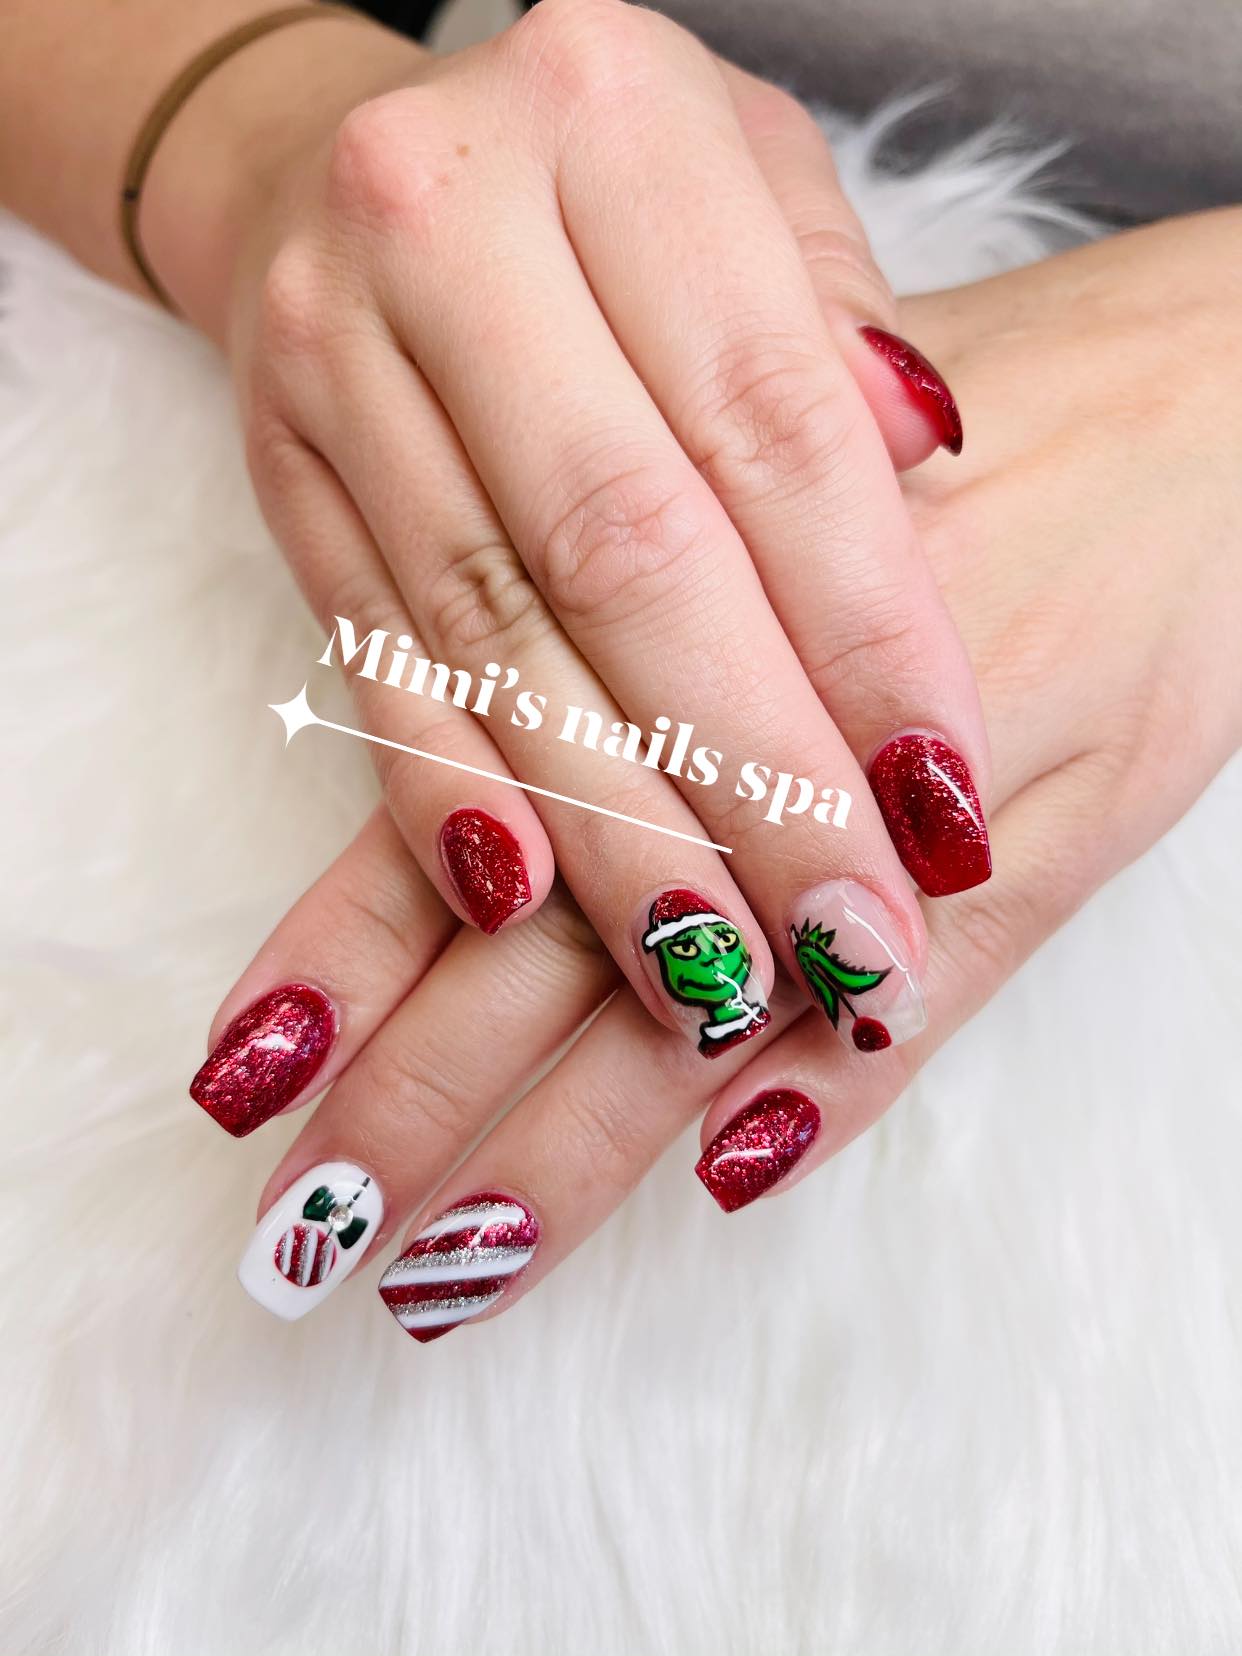 Mimi's Nails & Spa Salon LLC 1266 S 6th St, Macclenny Florida 32063